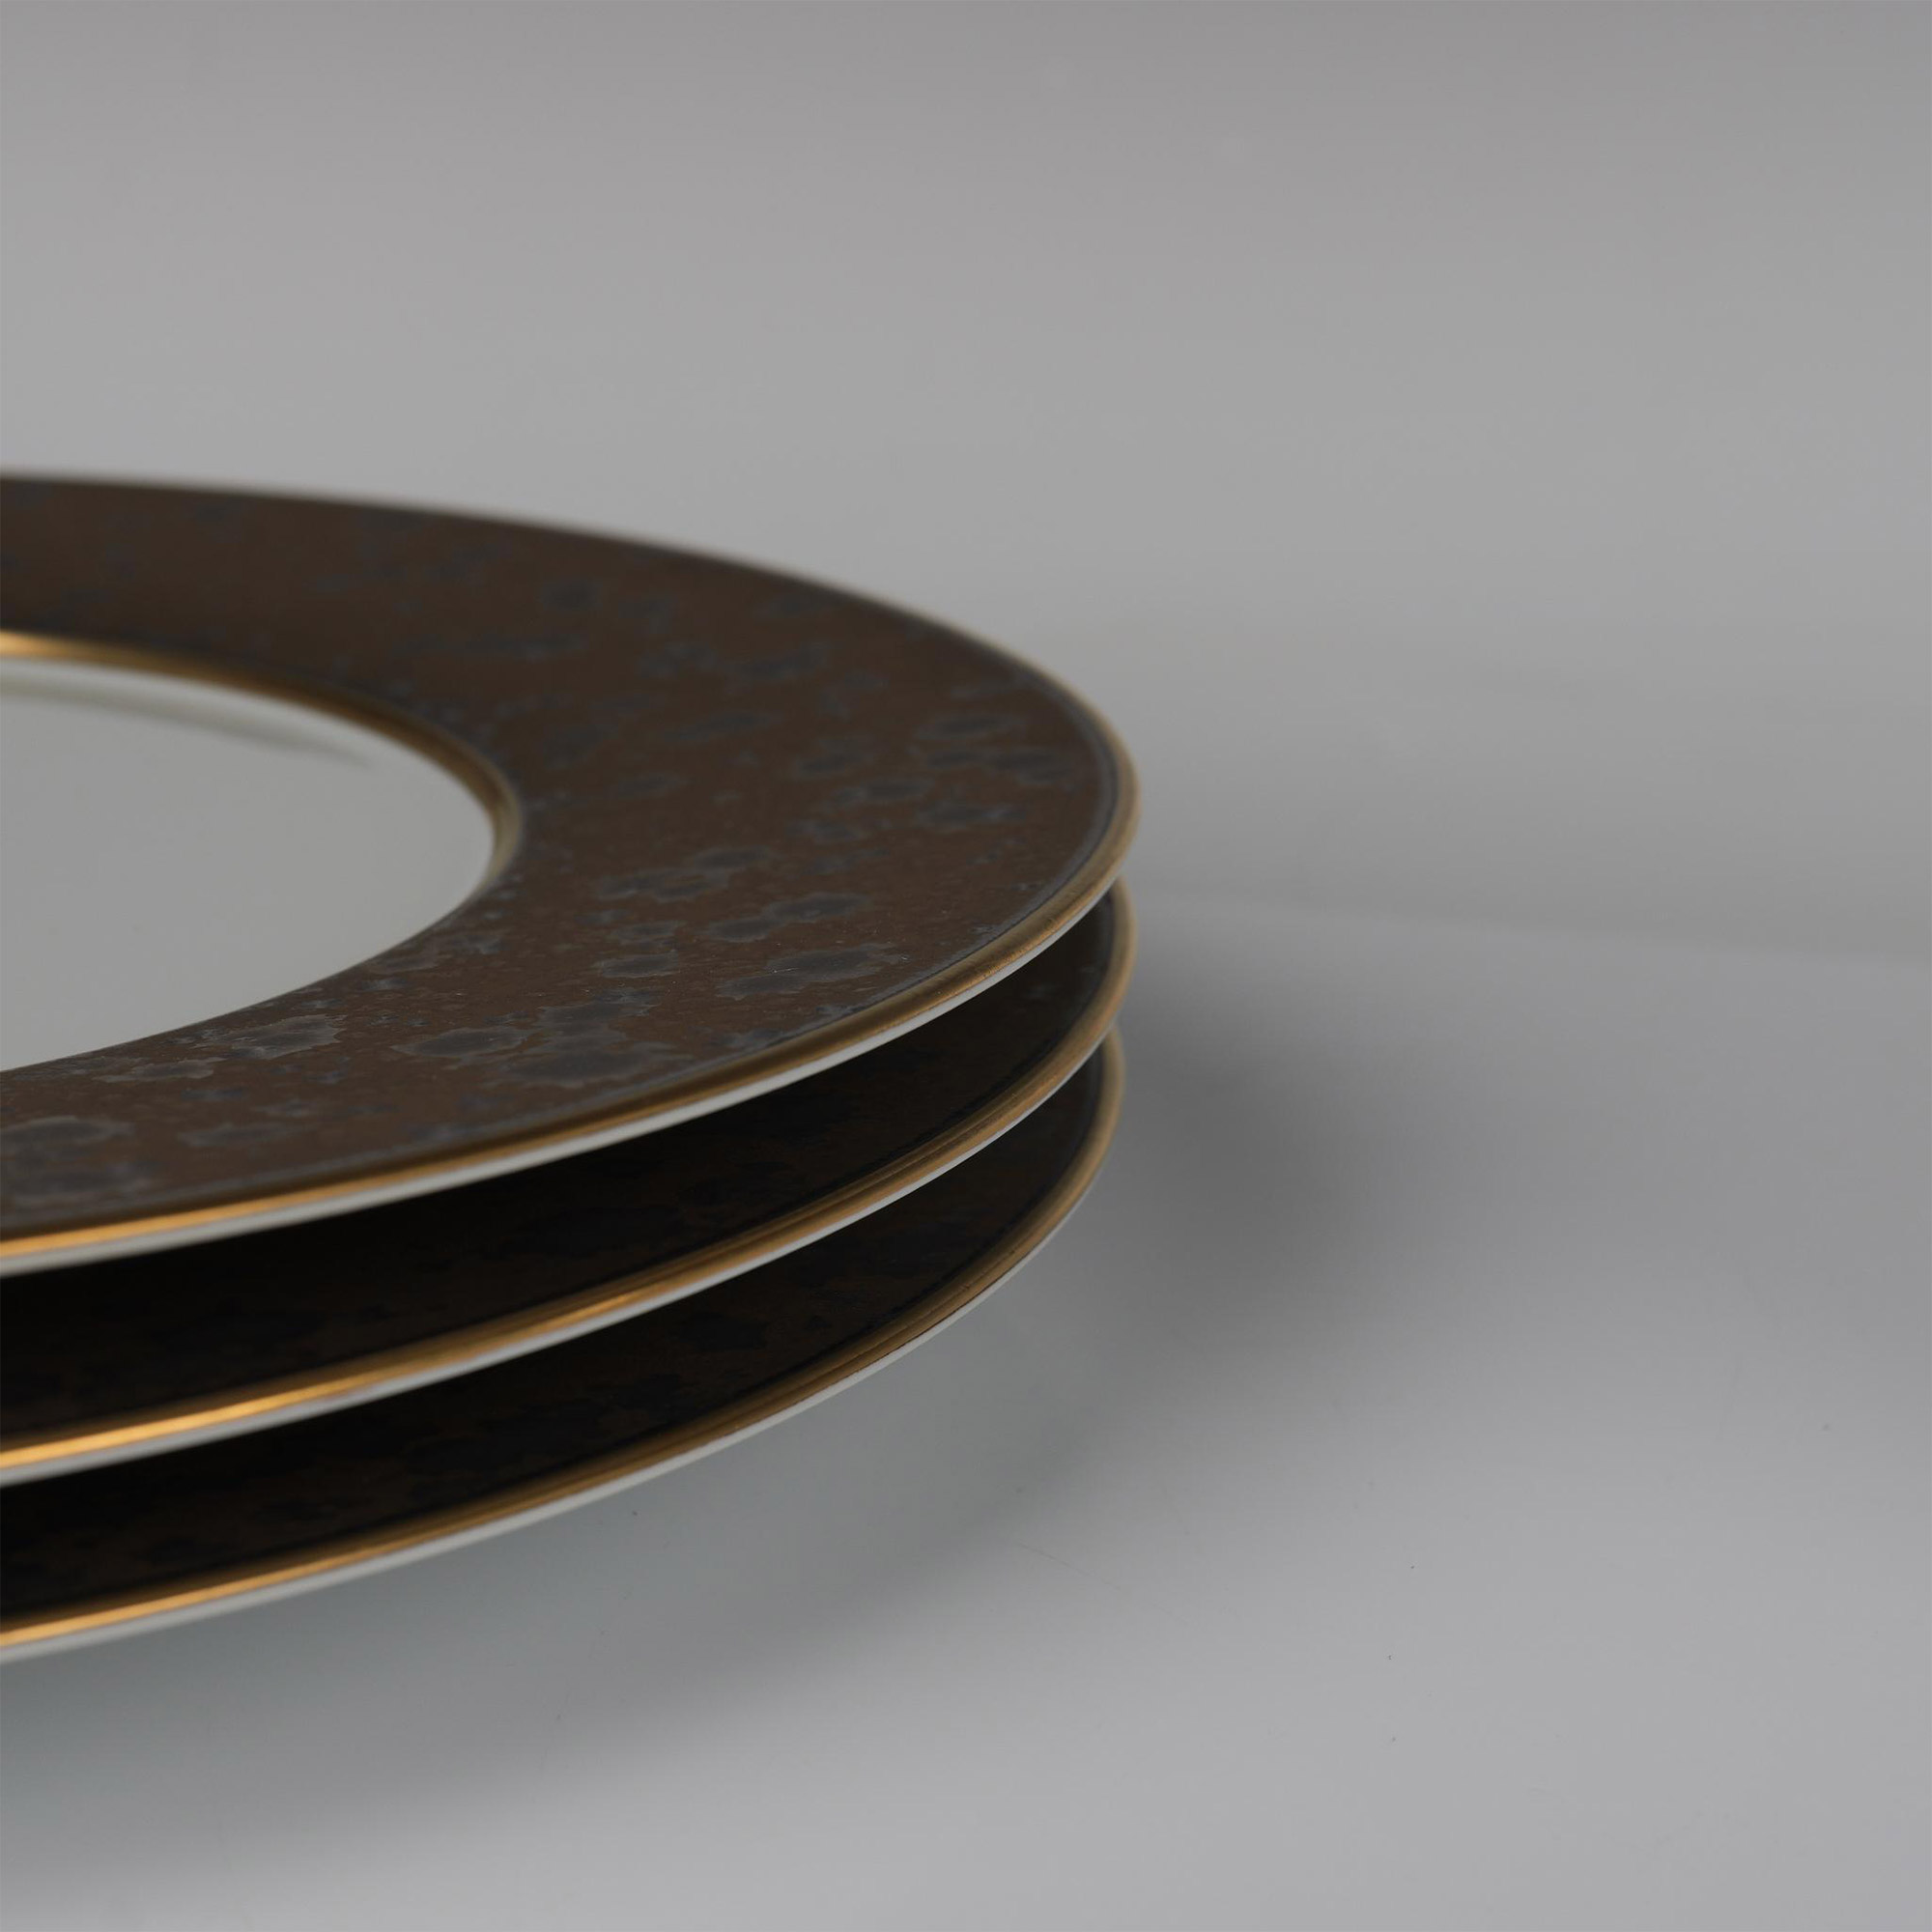 4pc Jaune de Chrome Porcelain Charger Plates, Basmati Gold - Image 4 of 4